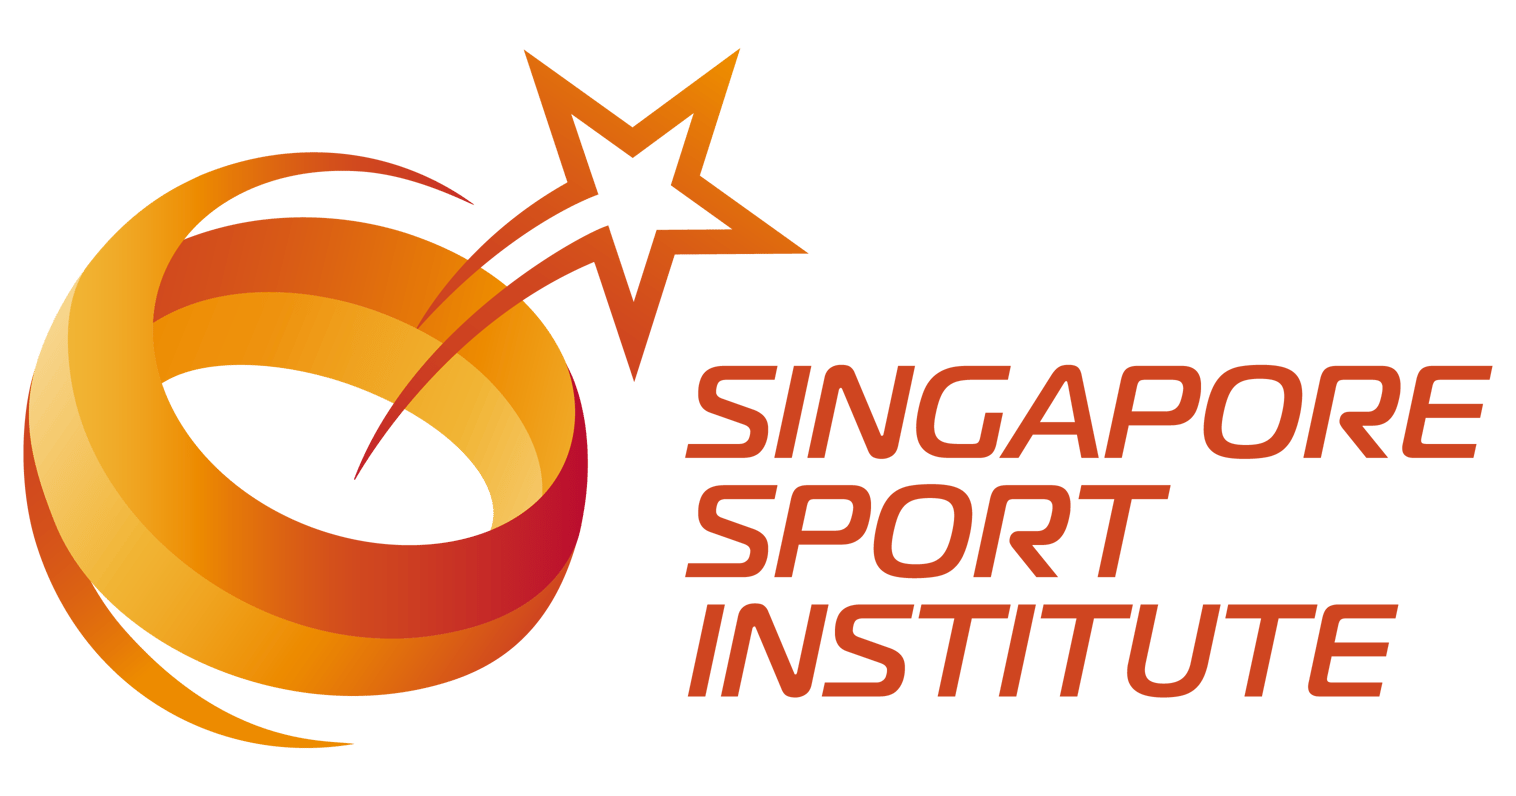 Singapore Sport Institute